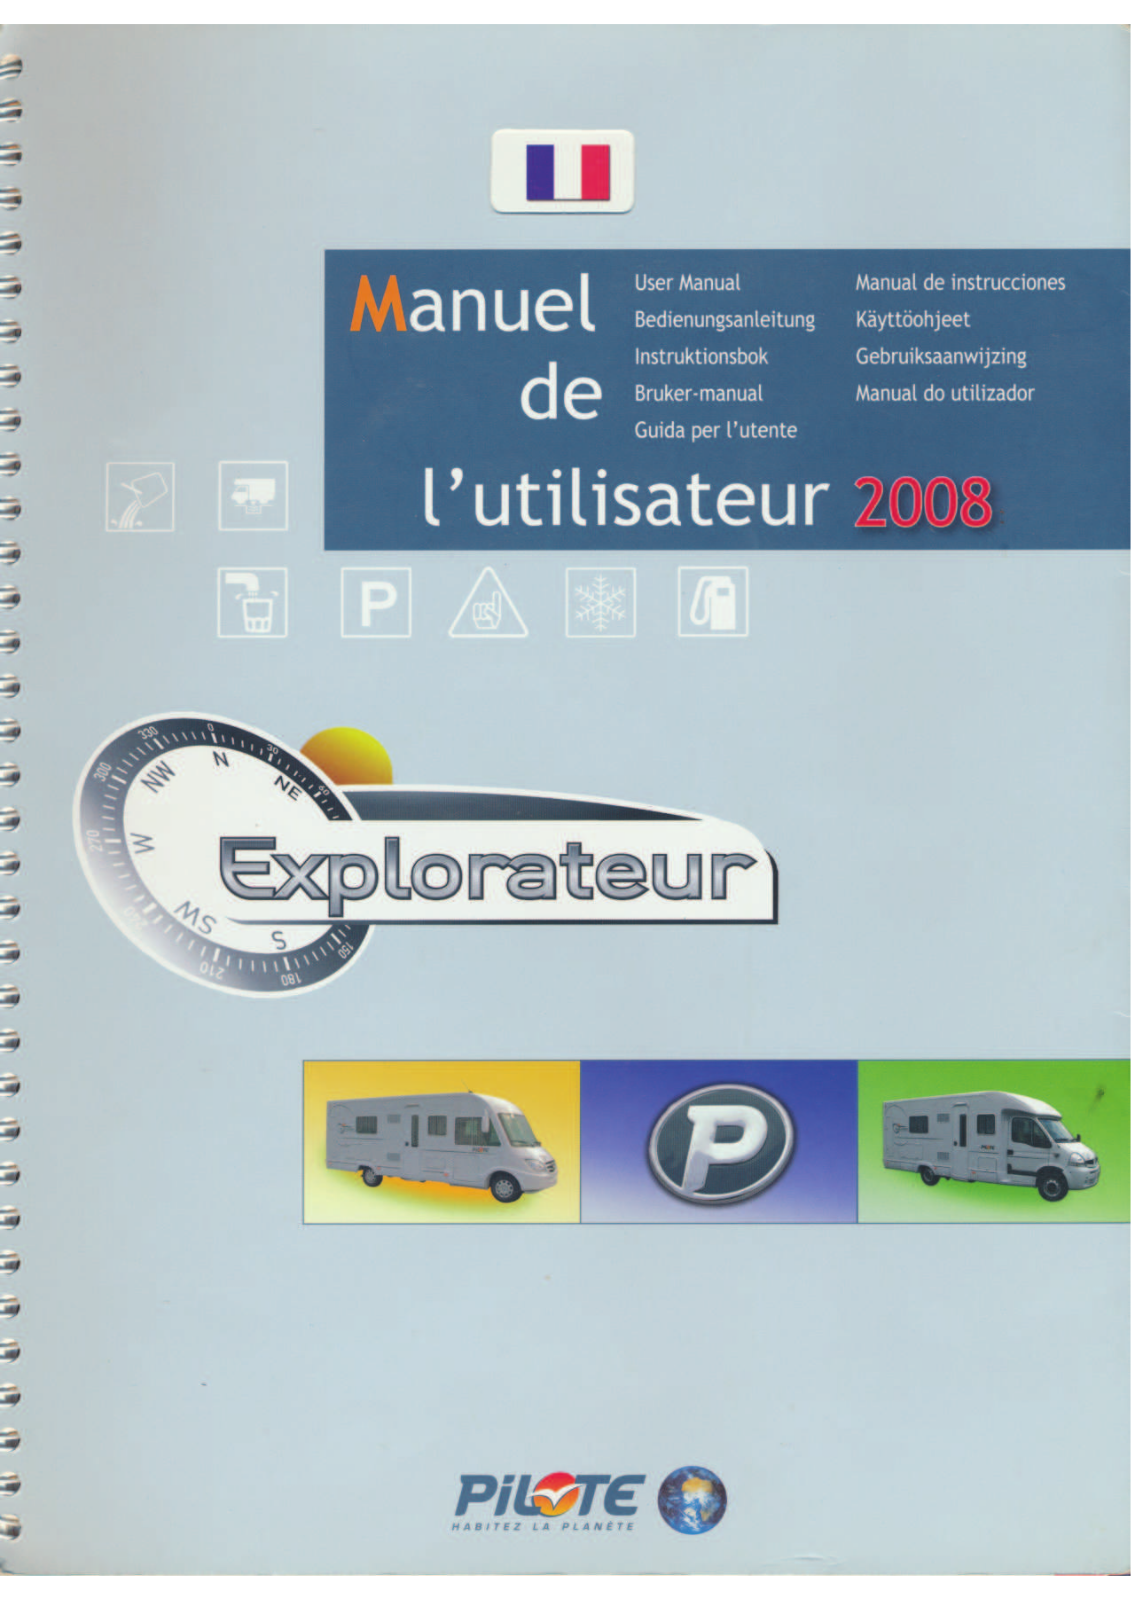 PILOTE EXPLORATEUR 733 User Manual